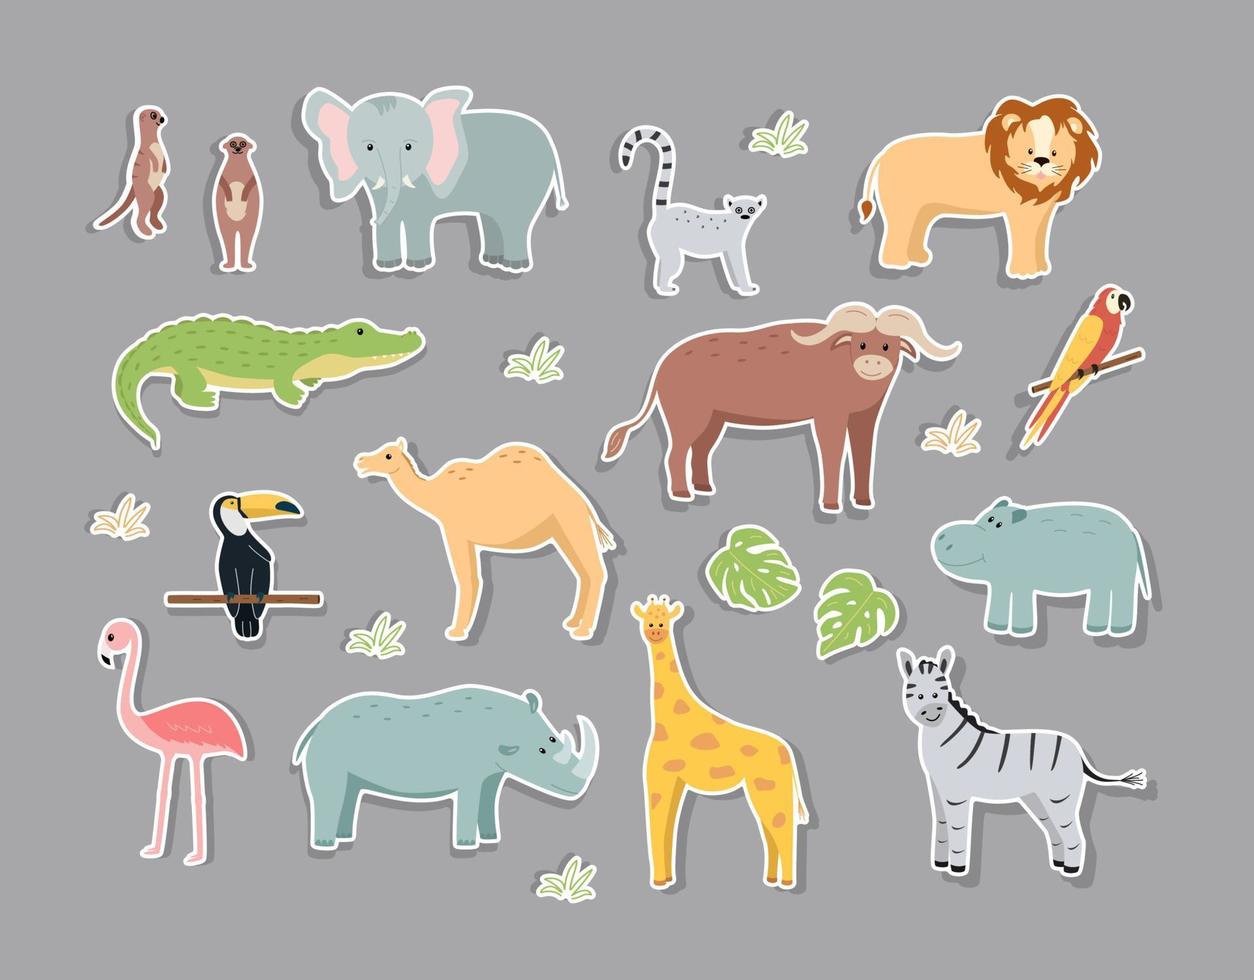 adesivos de animais de desenho animado da áfrica, ilustração vetorial de animais engraçados fofos vetor